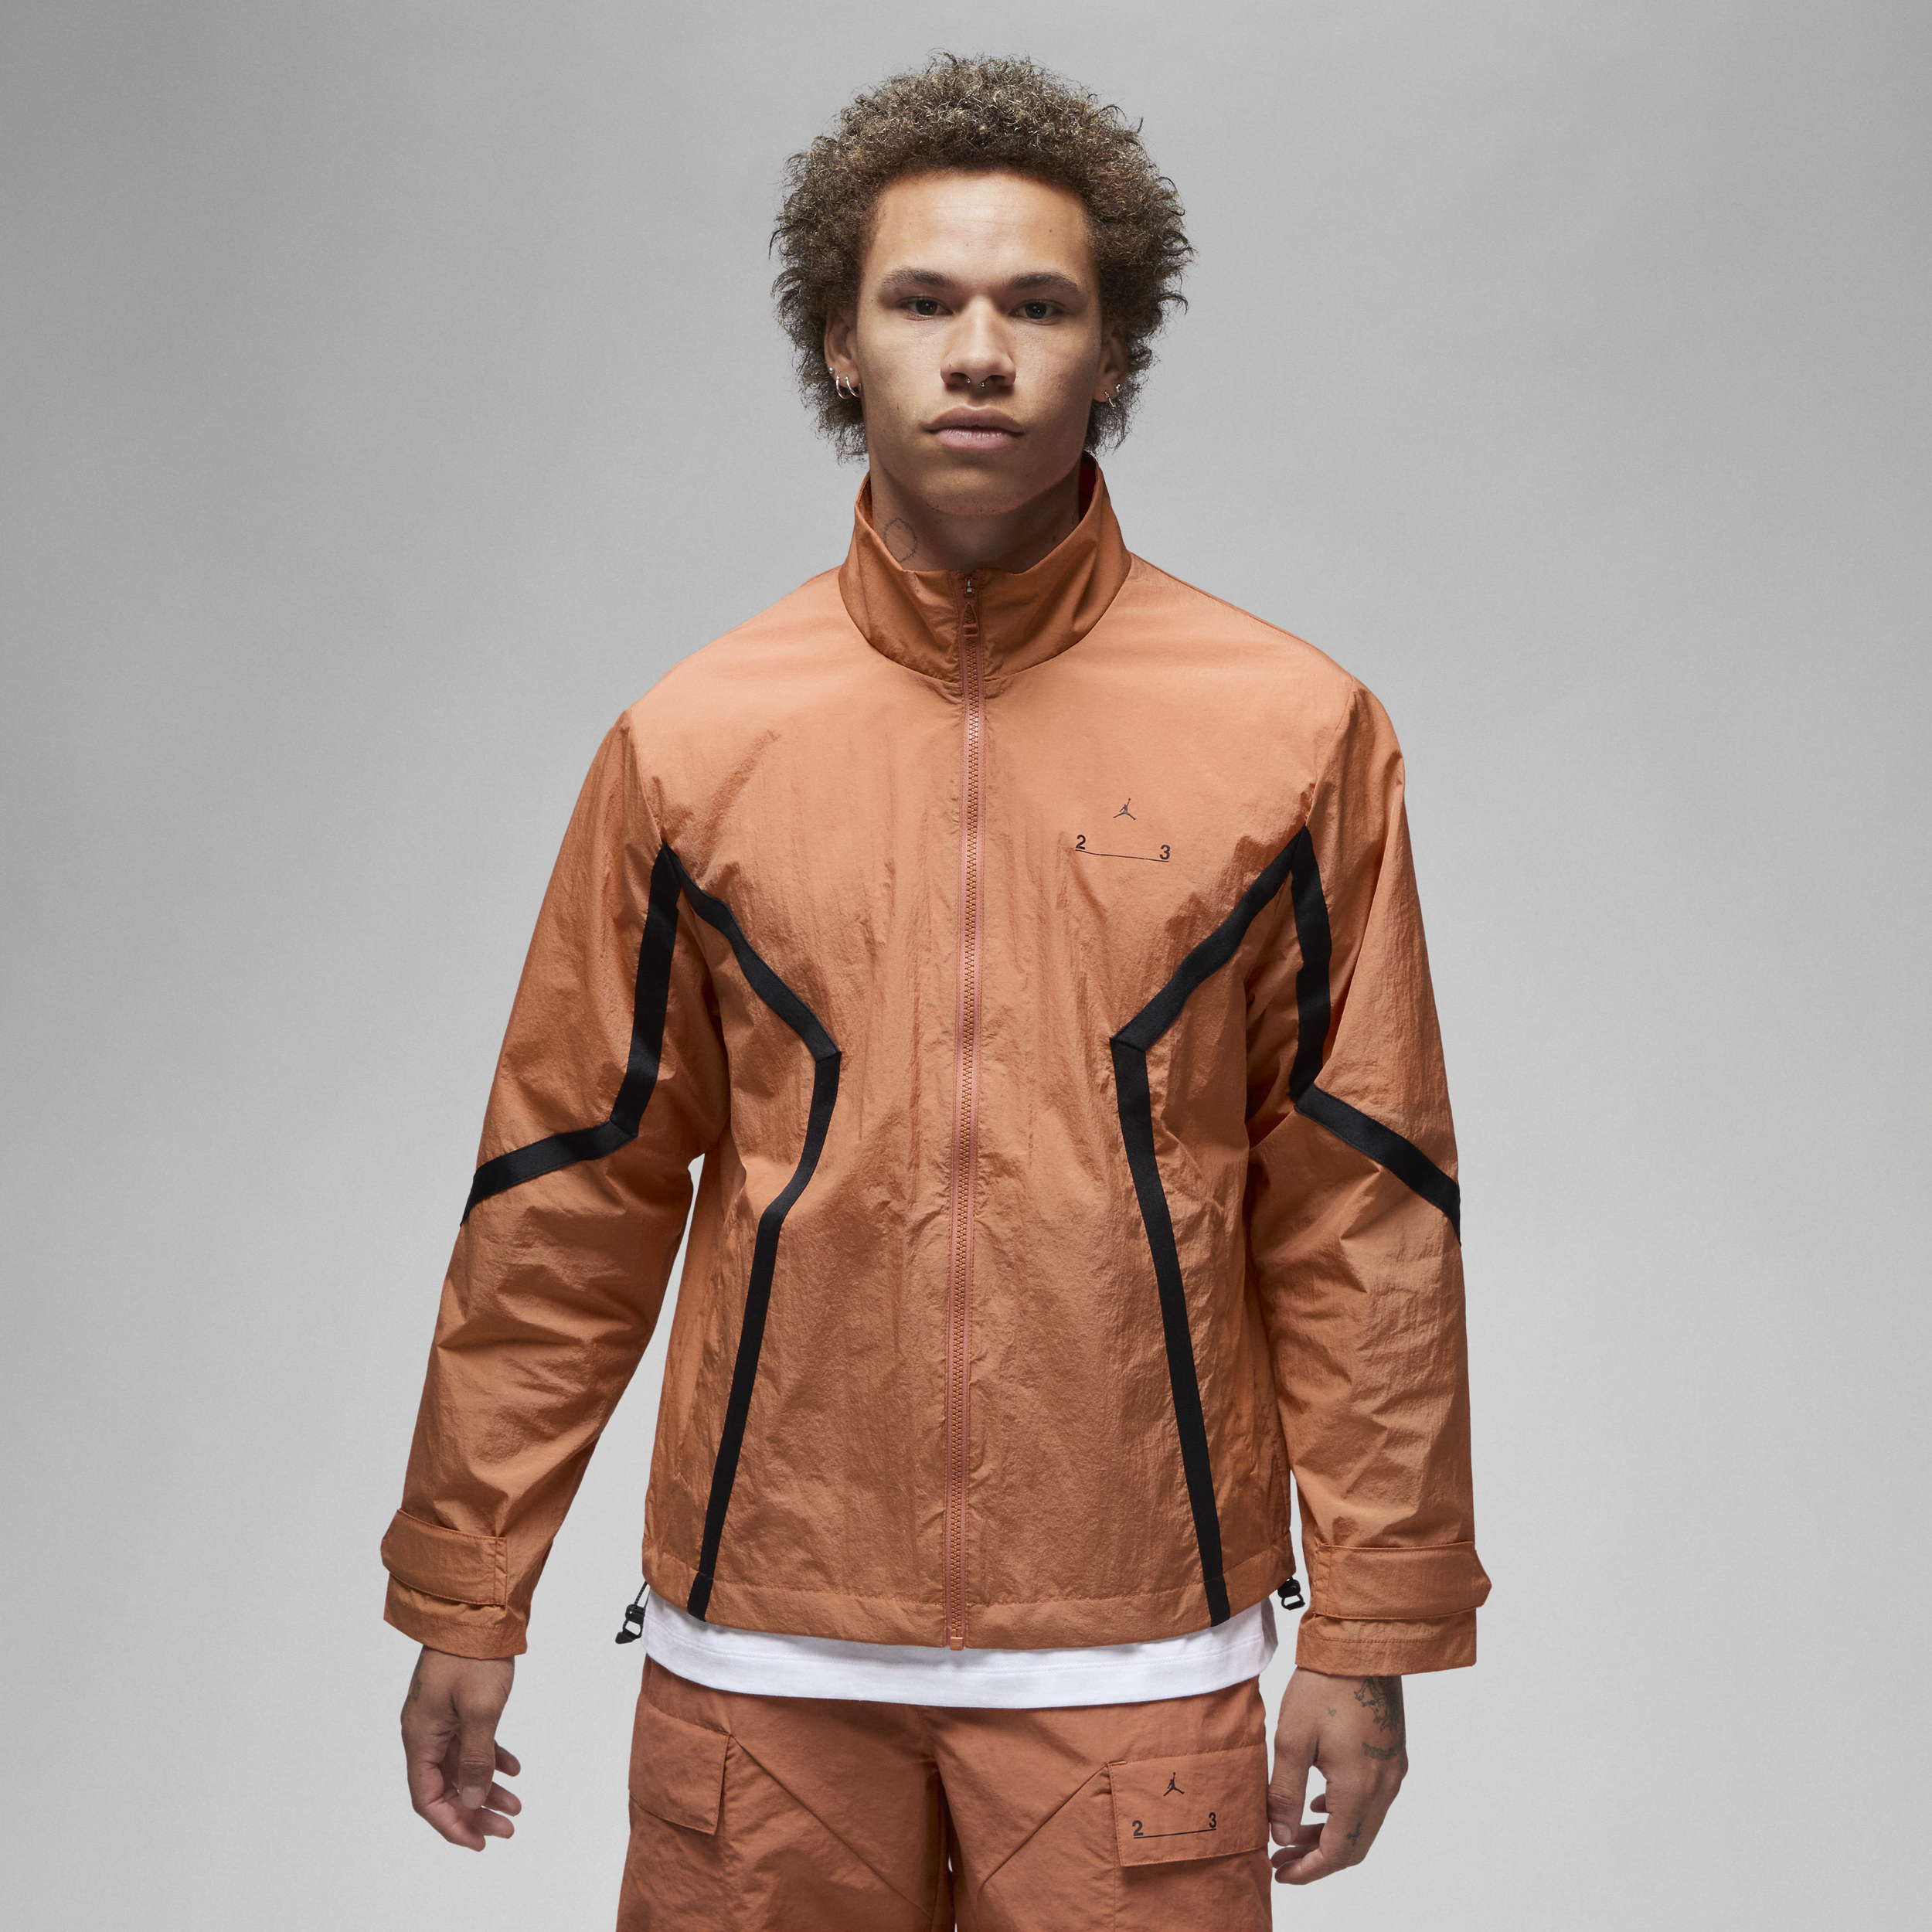 Jordan 23 Engineered-jakke til mænd - Orange